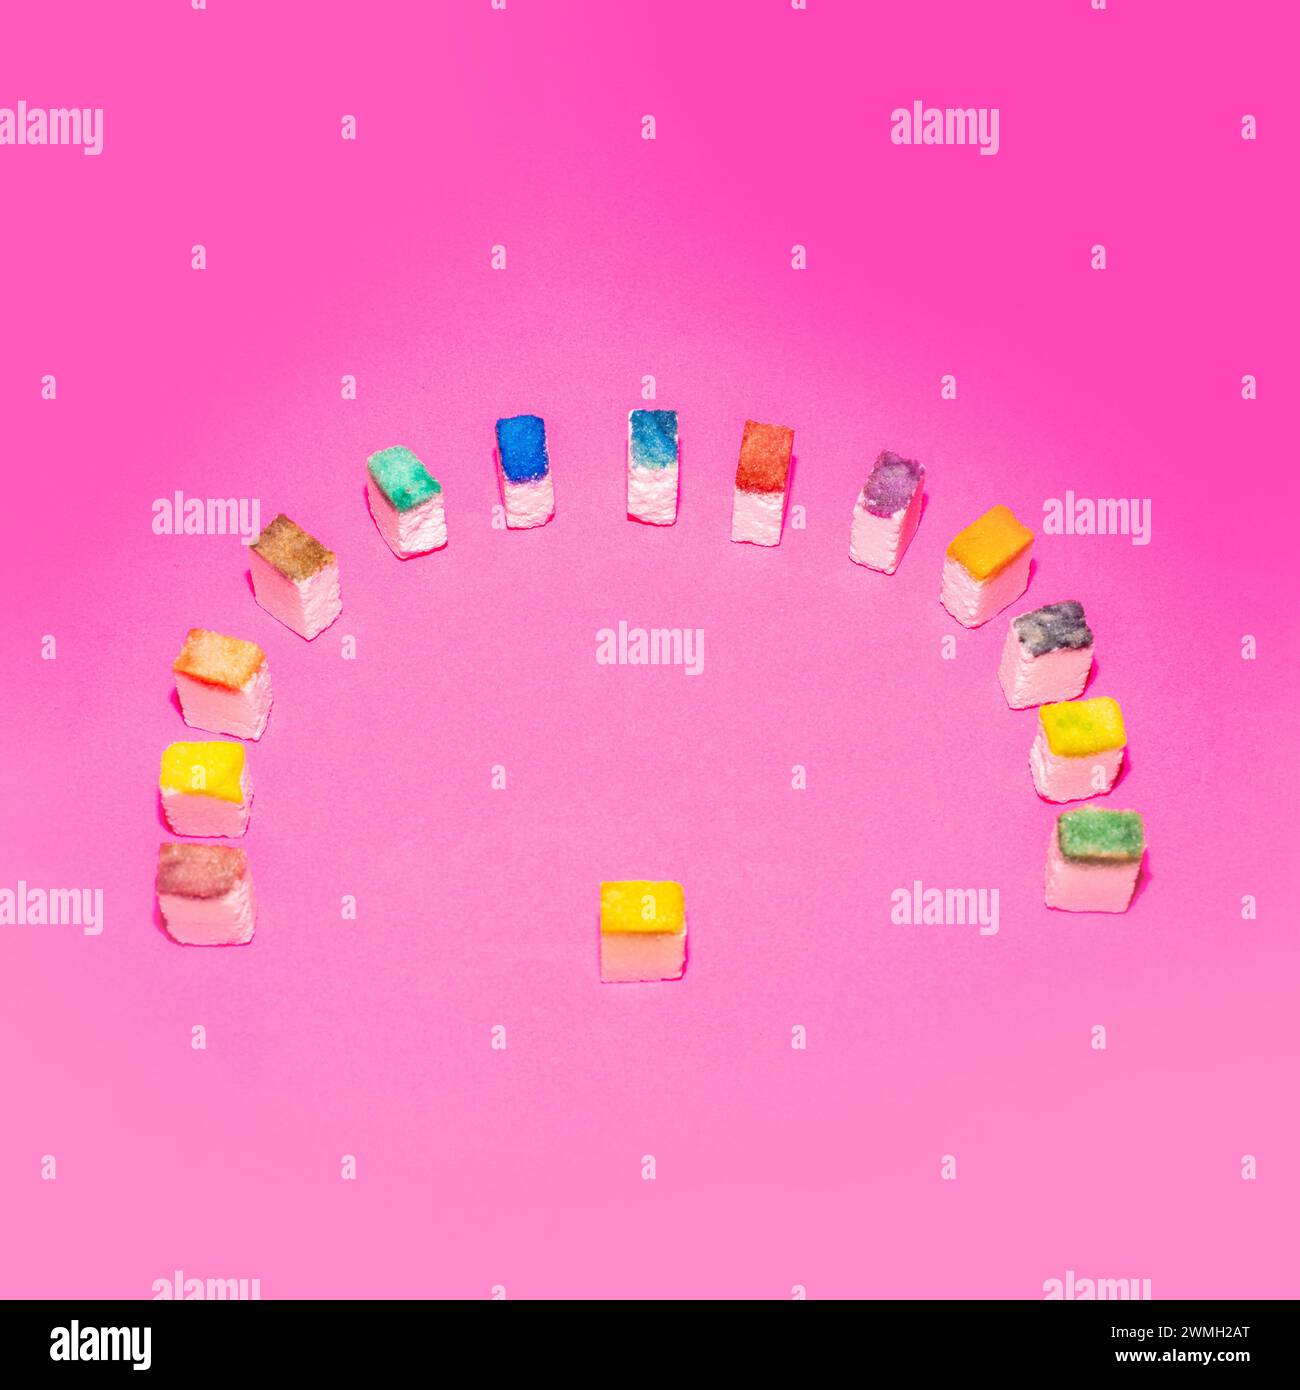 Cubos de azúcar coloridos en forma de una multitud sobre un fondo rosa. La metáfora de la gente. Concepto de comida creativa. Foto de stock